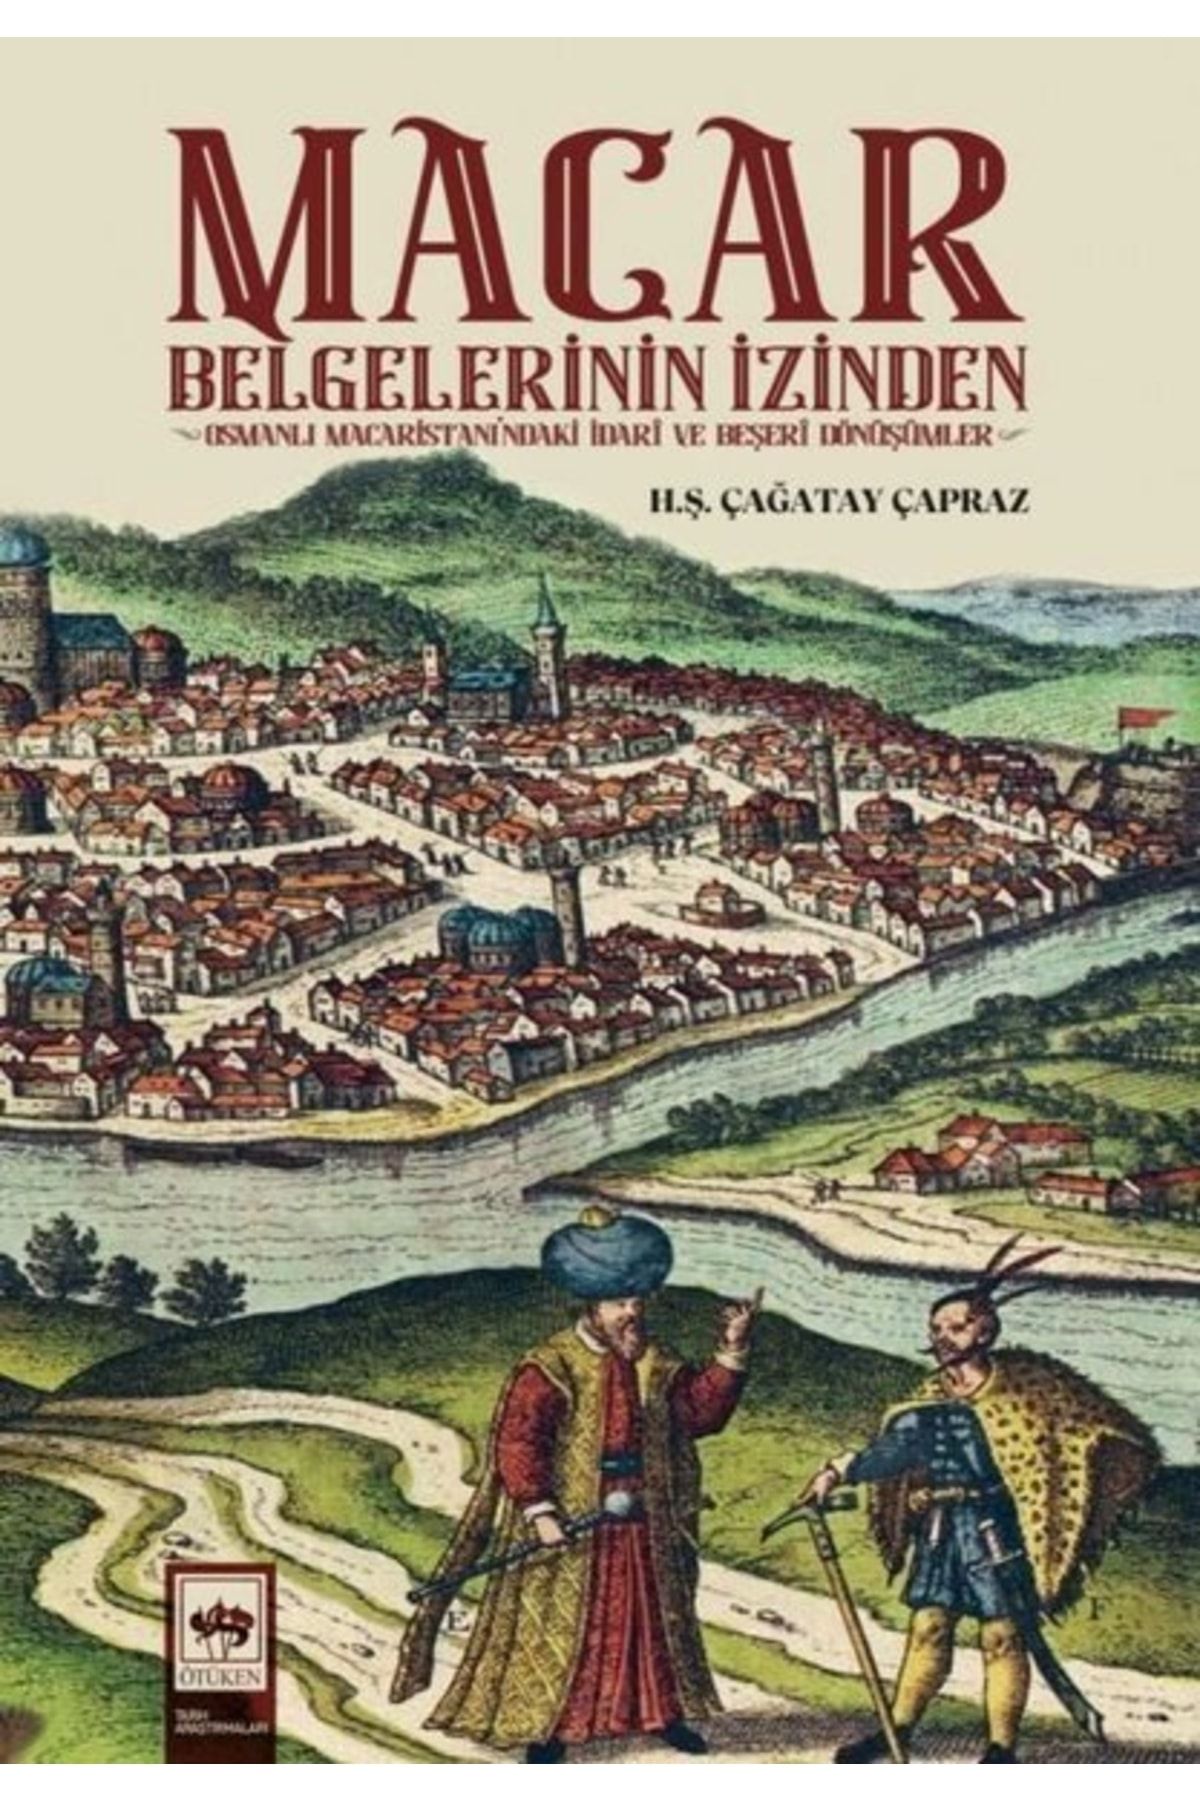 Ötüken Neşriyat Macar Belgelerinin Izinden - Osmanlı Macaristanı'ndaki Idari Ve Beşeri Dönüşümler